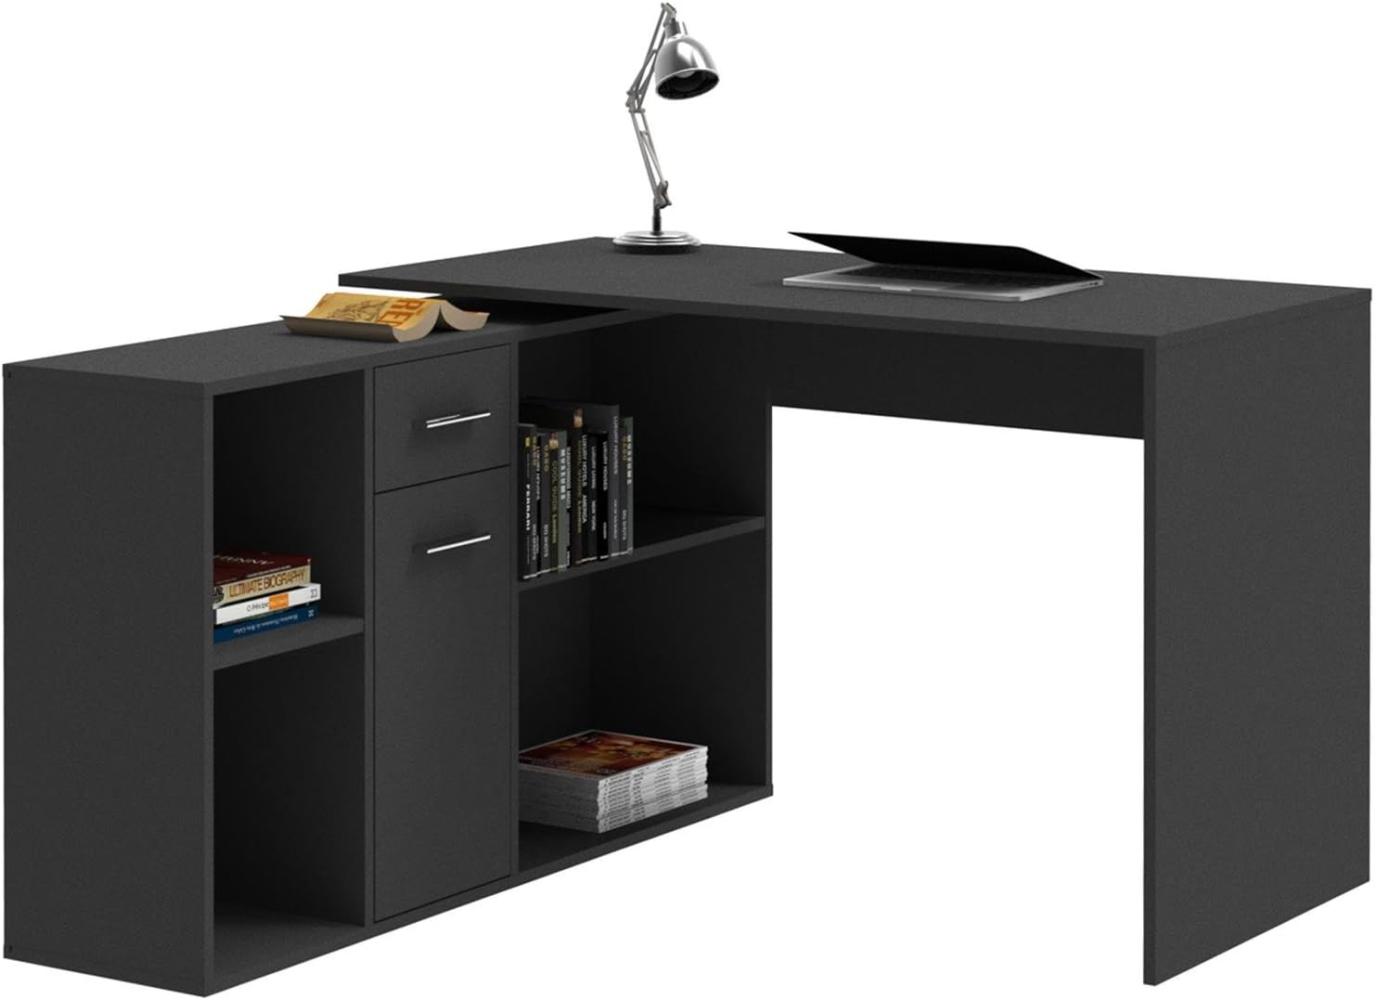 CARO-Möbel Eckschreibtisch Diego Bürotisch Arbeitstisch mit Regal, 120 x 75 x 122 cm in schwarz, 1 Schublade, 4 Fächer Verschiedene Aufbaumöglichkeiten Bild 1